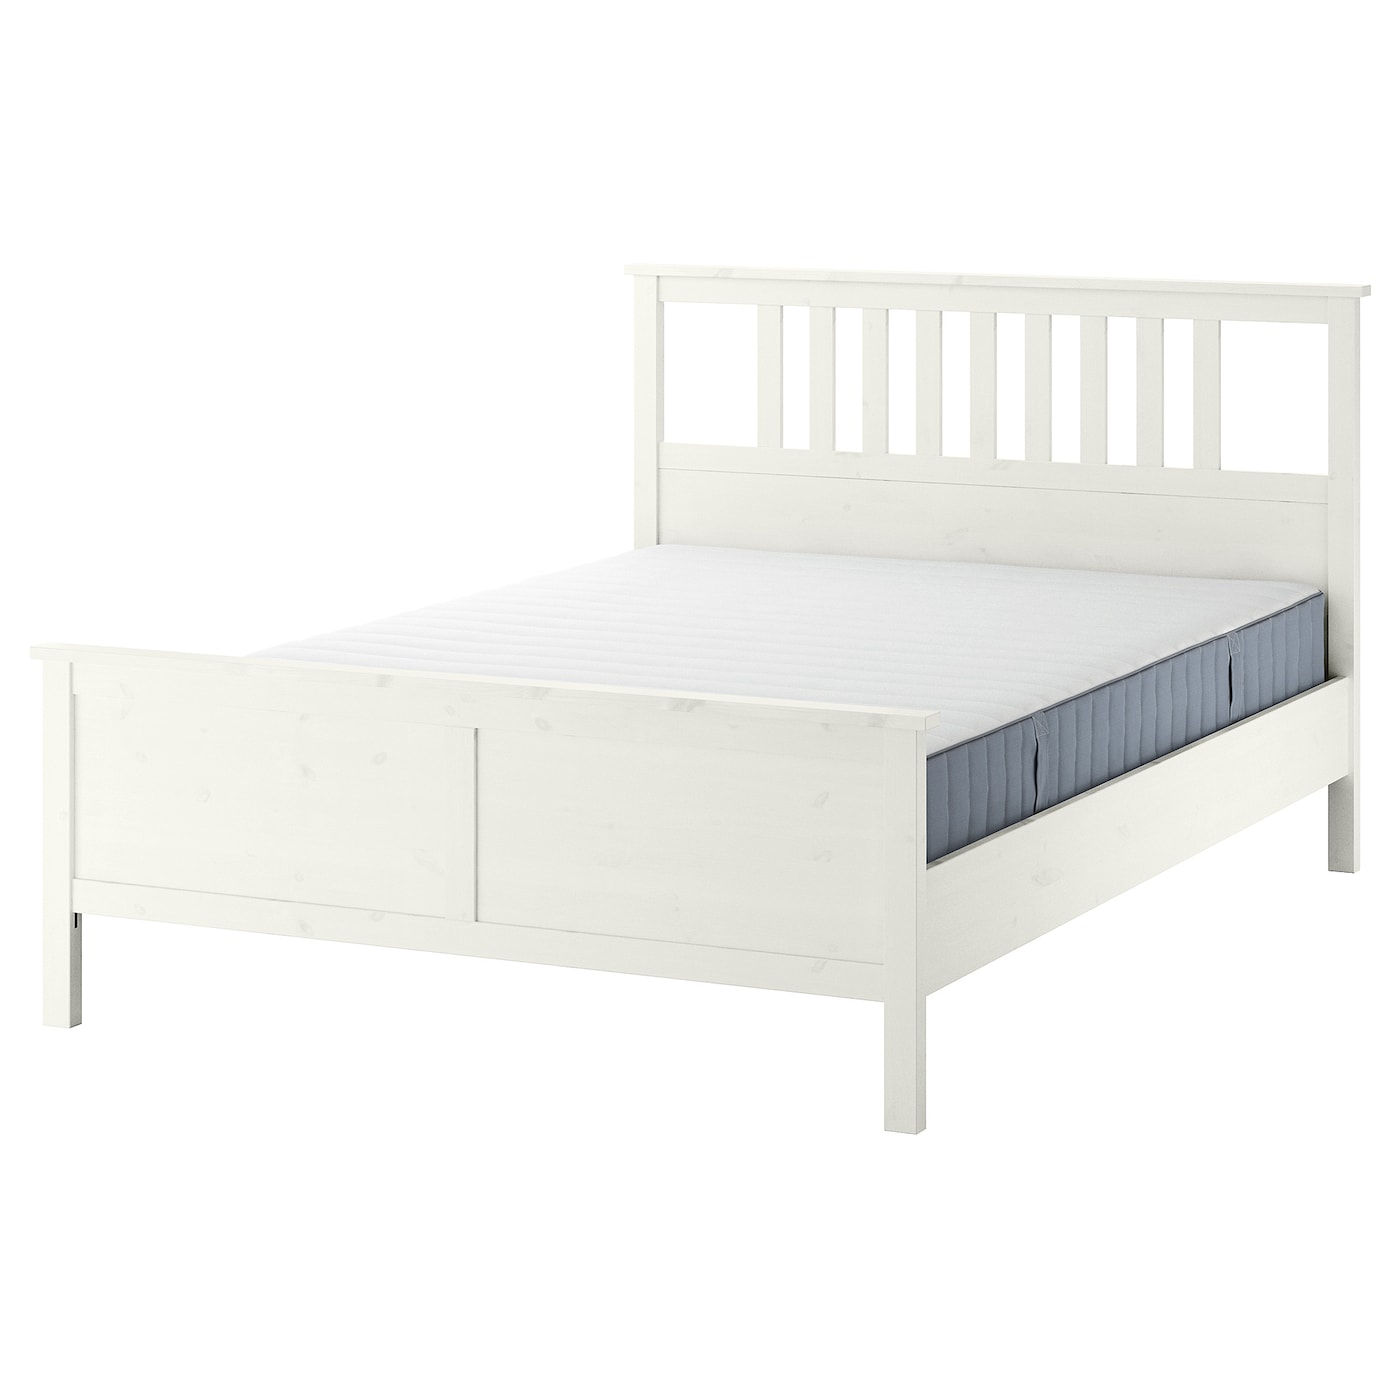 Каркас кровати - IKEA HEMNES, 200х140 см, жесткий матрас, белый, ХЕМНЕС ИКЕА